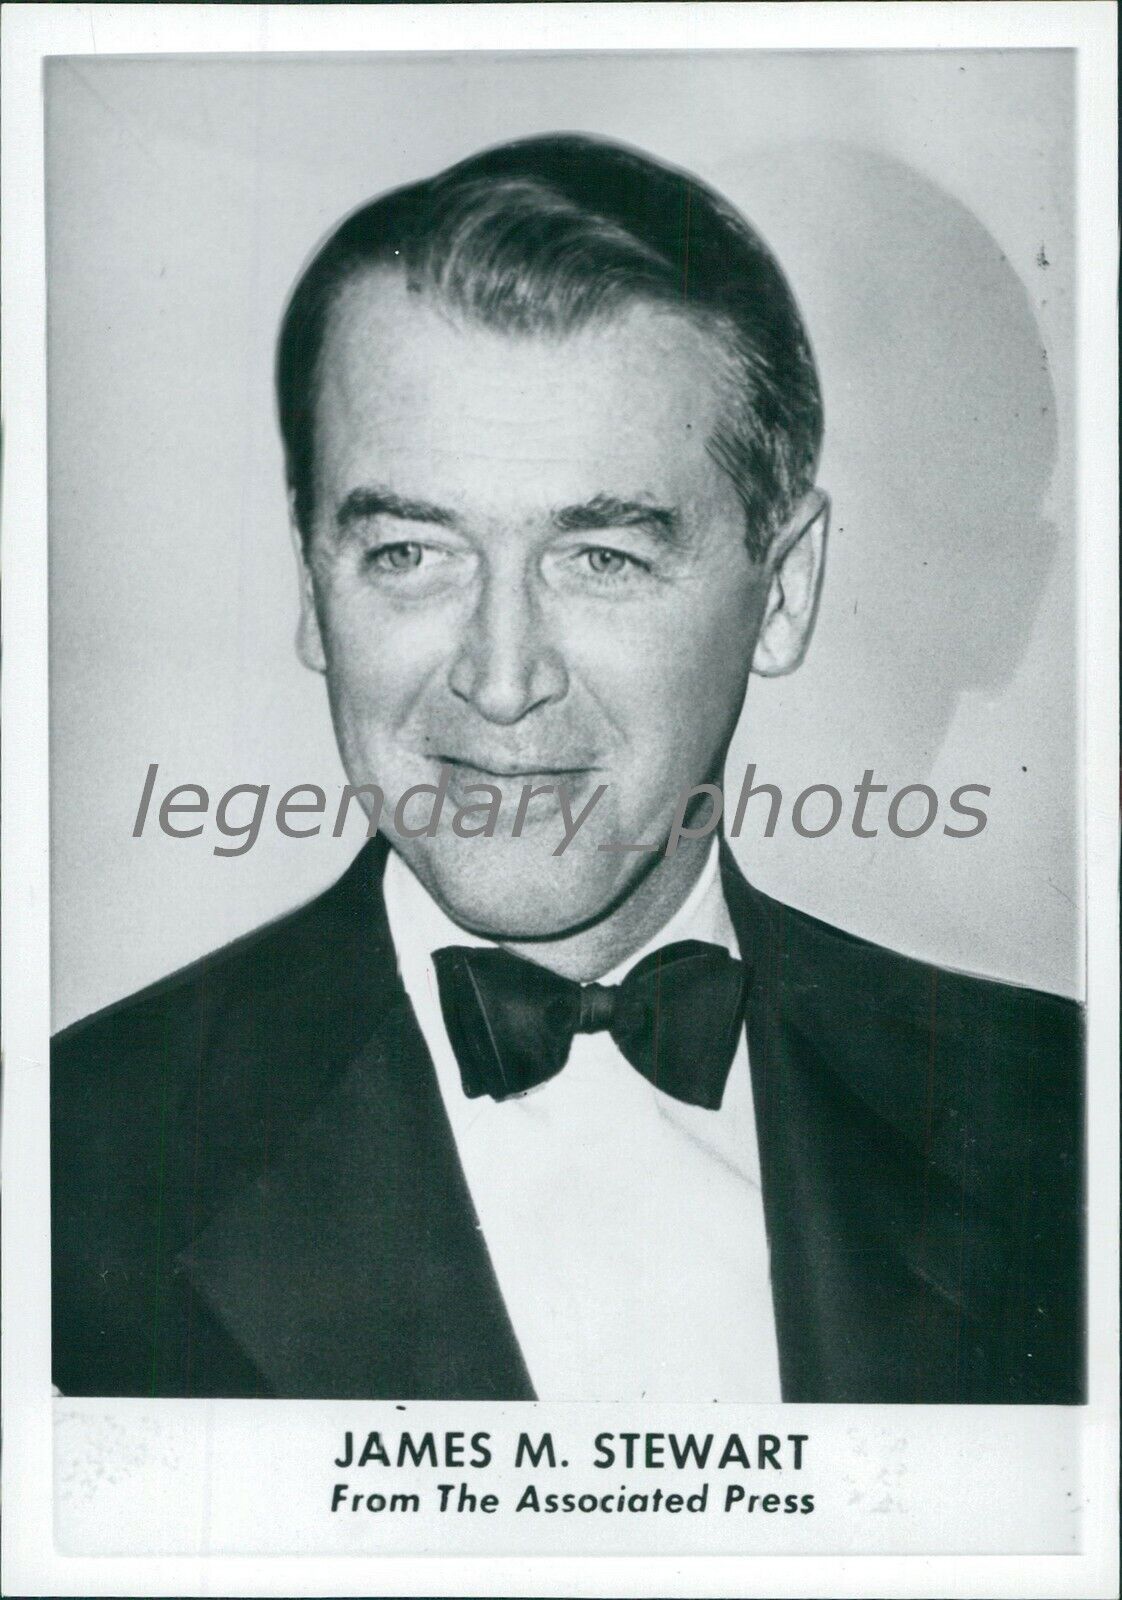 1959 James Stewart Actor Portrait Original Press Photo